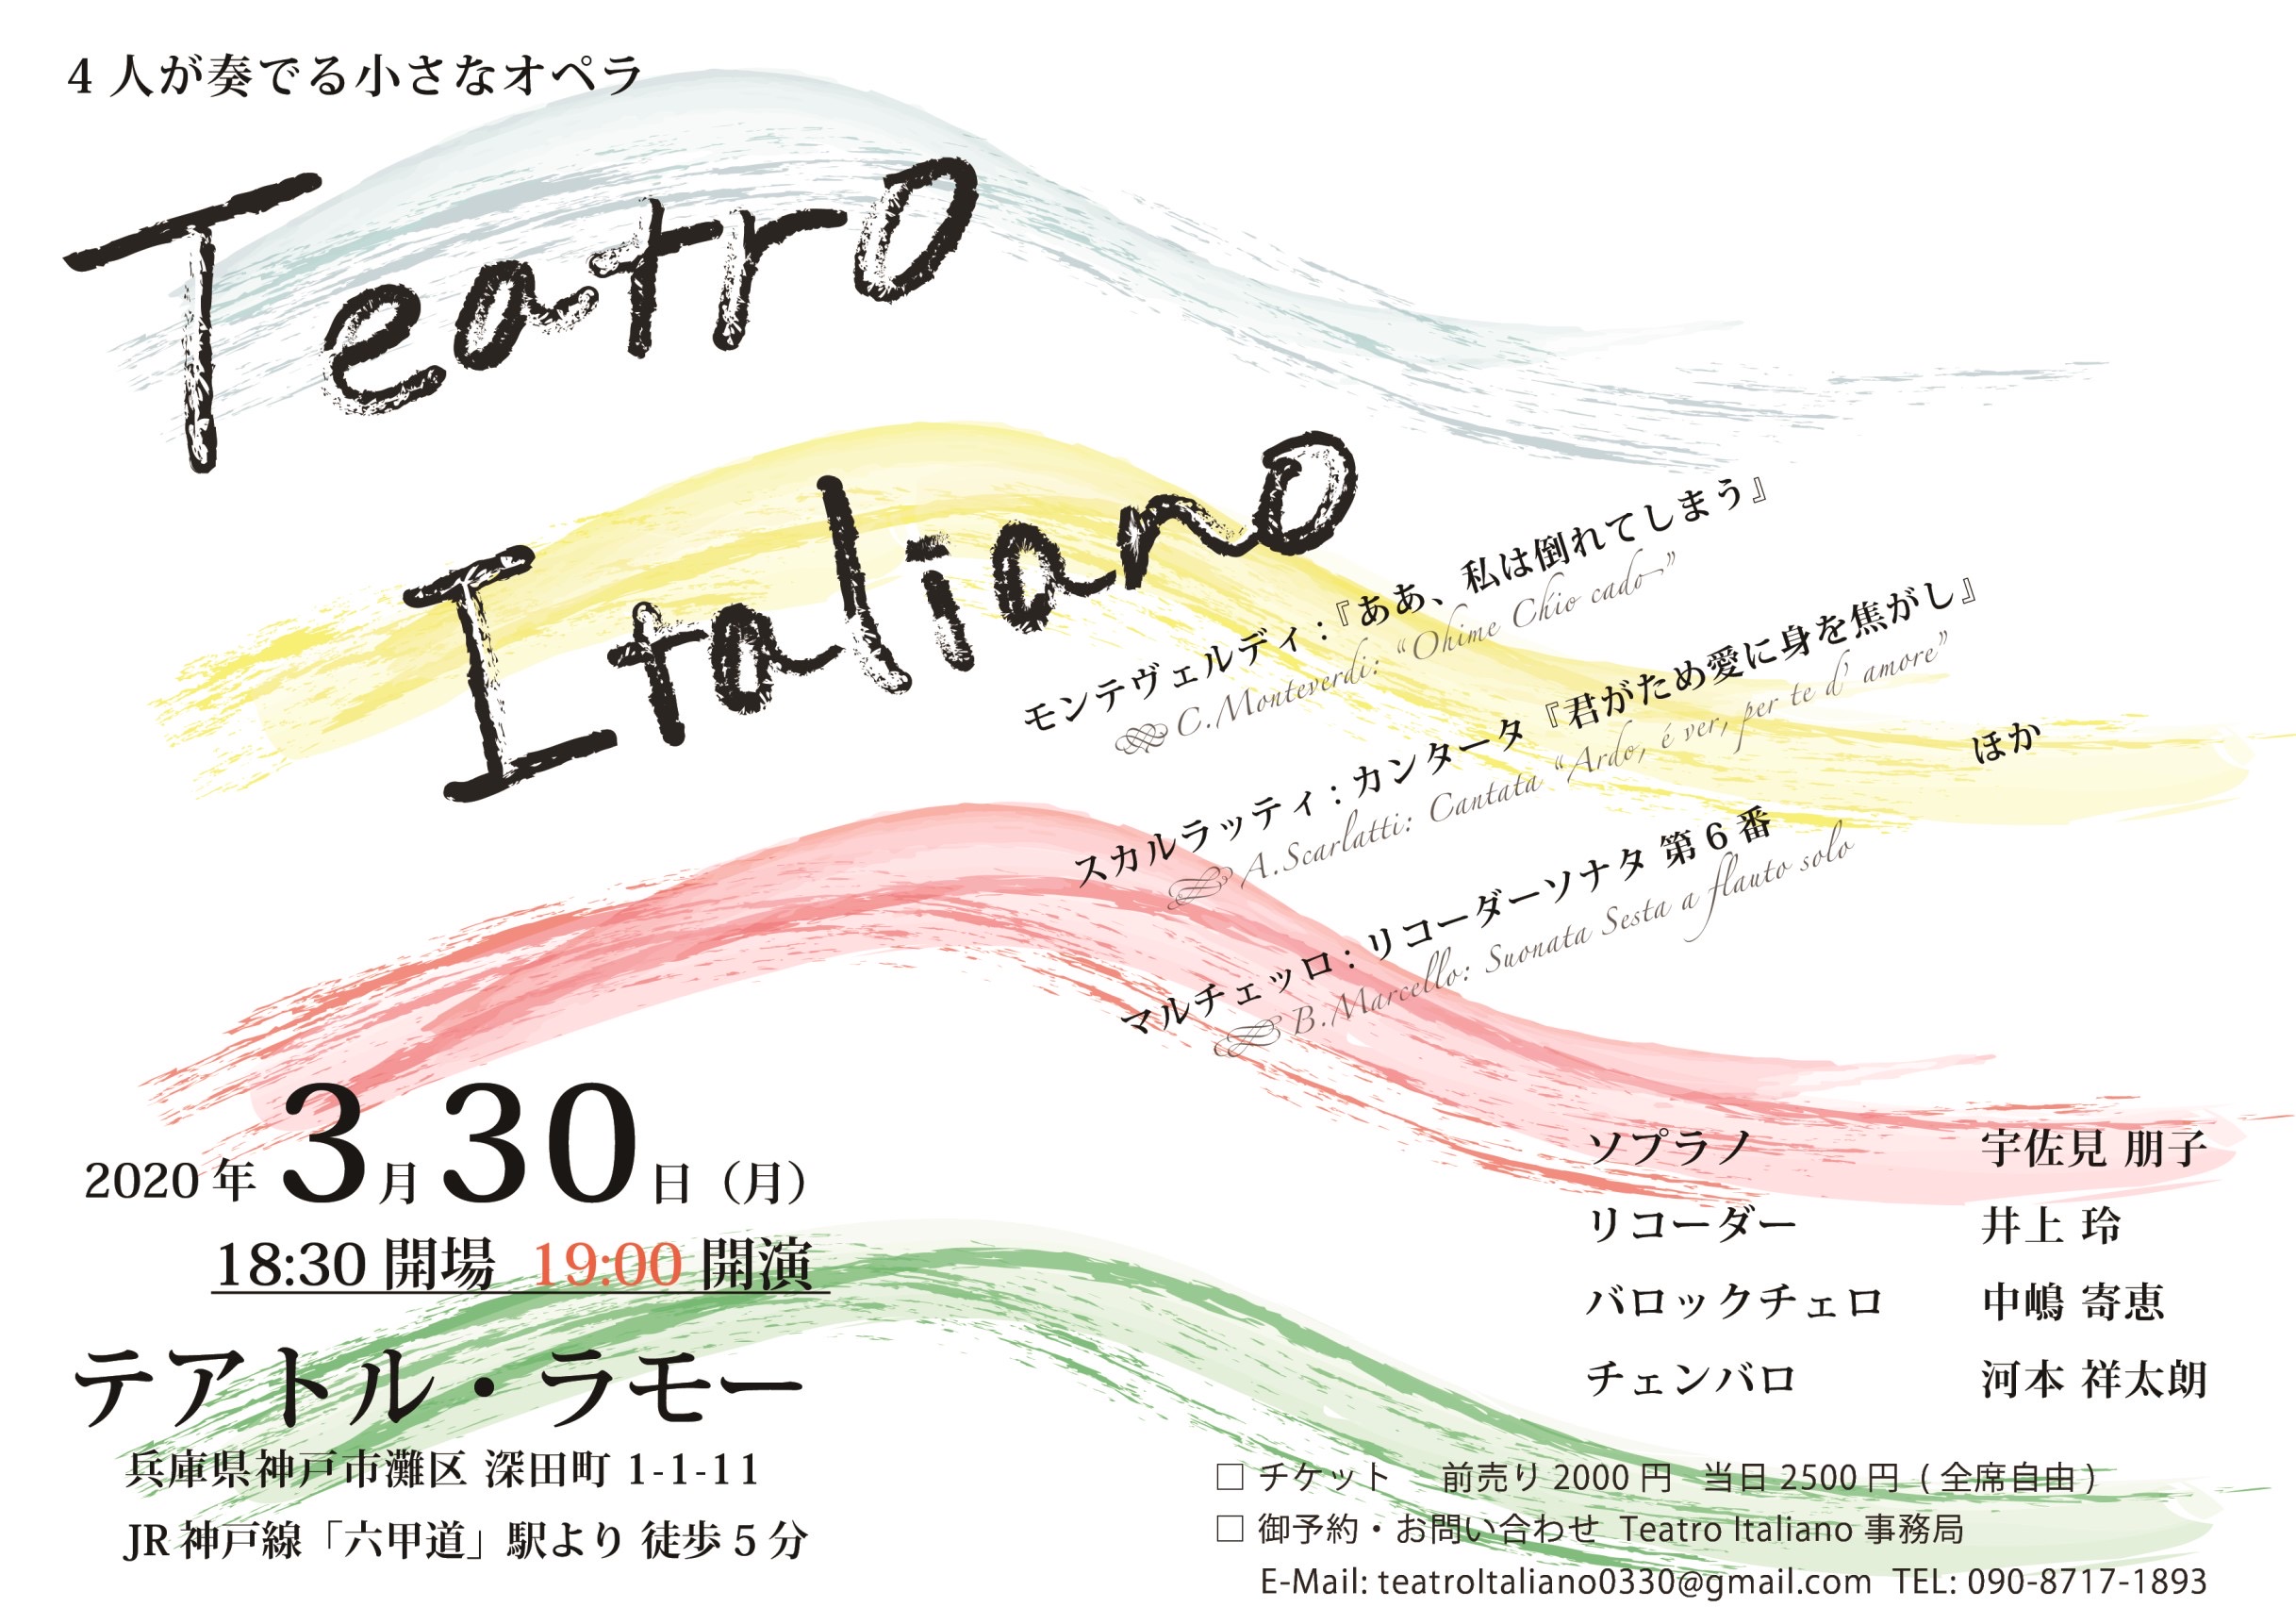 【延期】Teatro Italiano